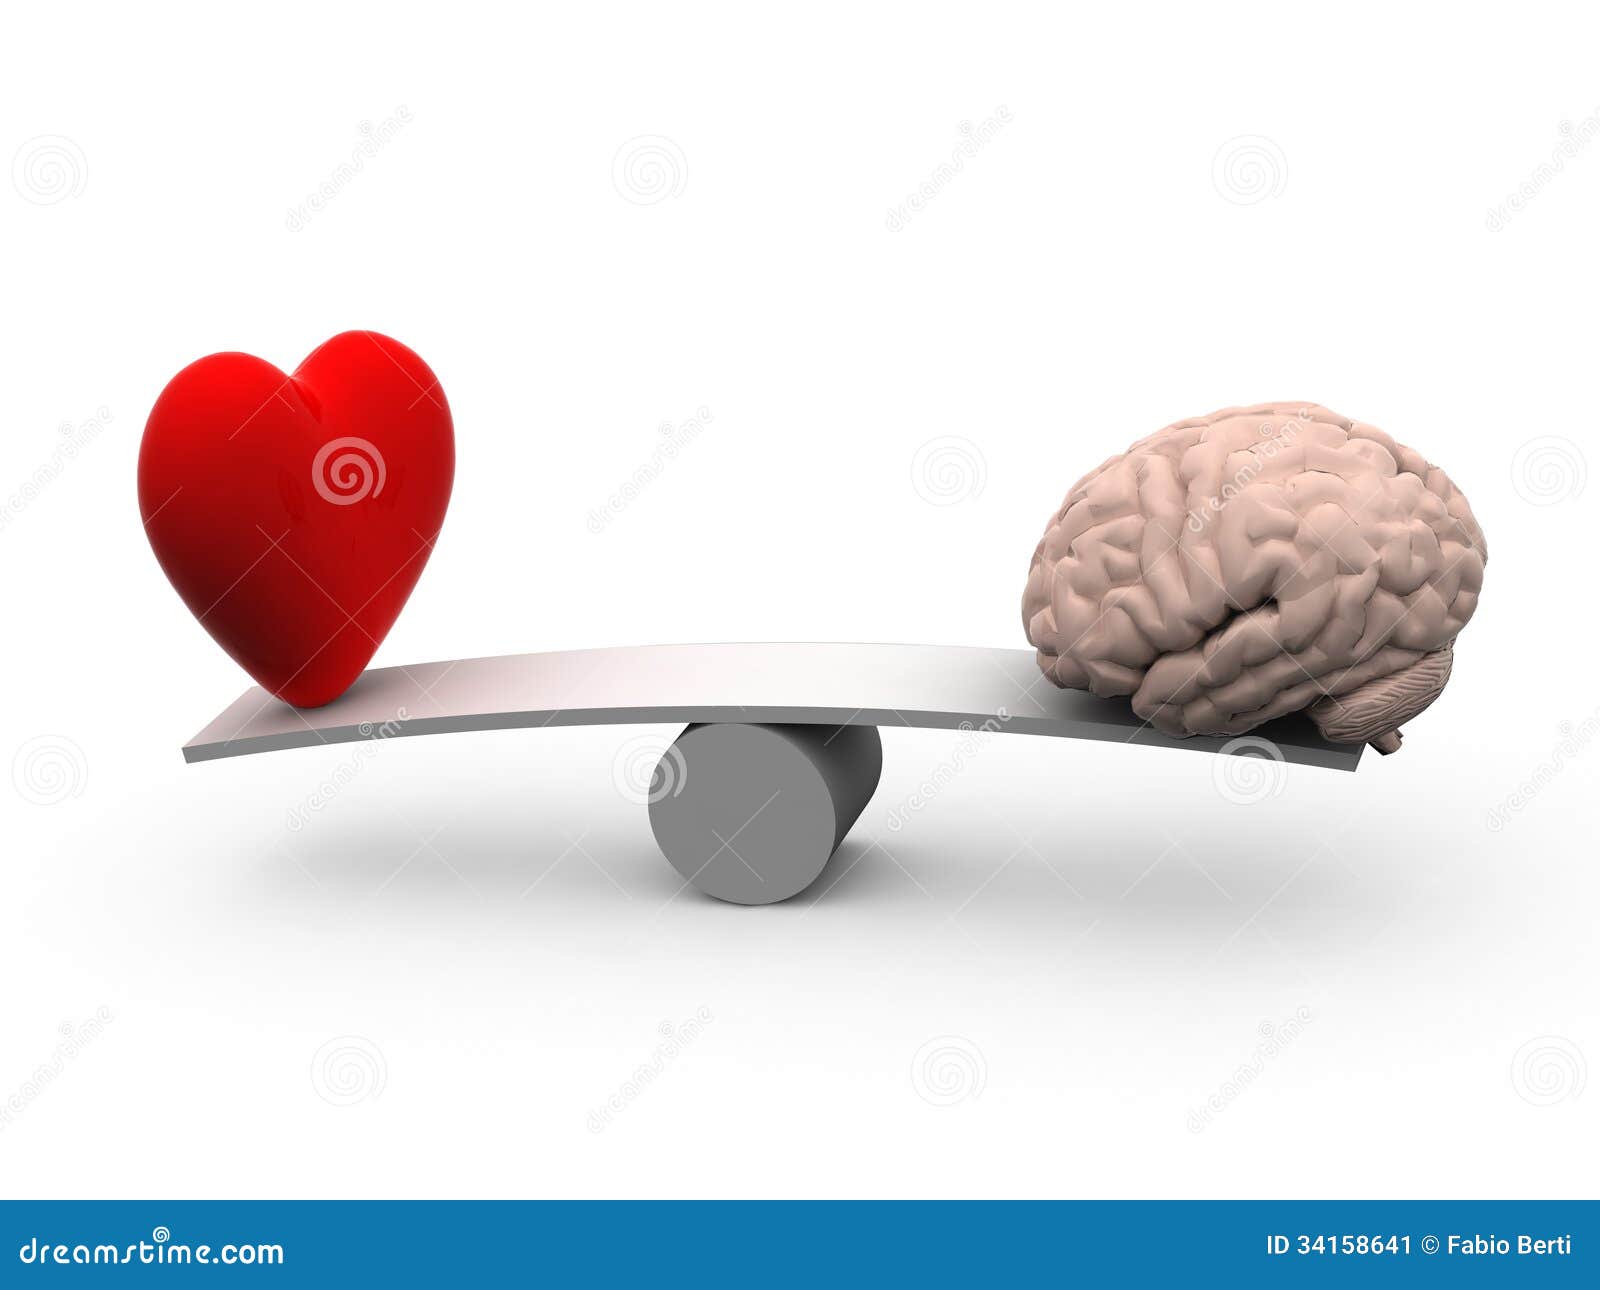 free clipart heart brain - photo #10